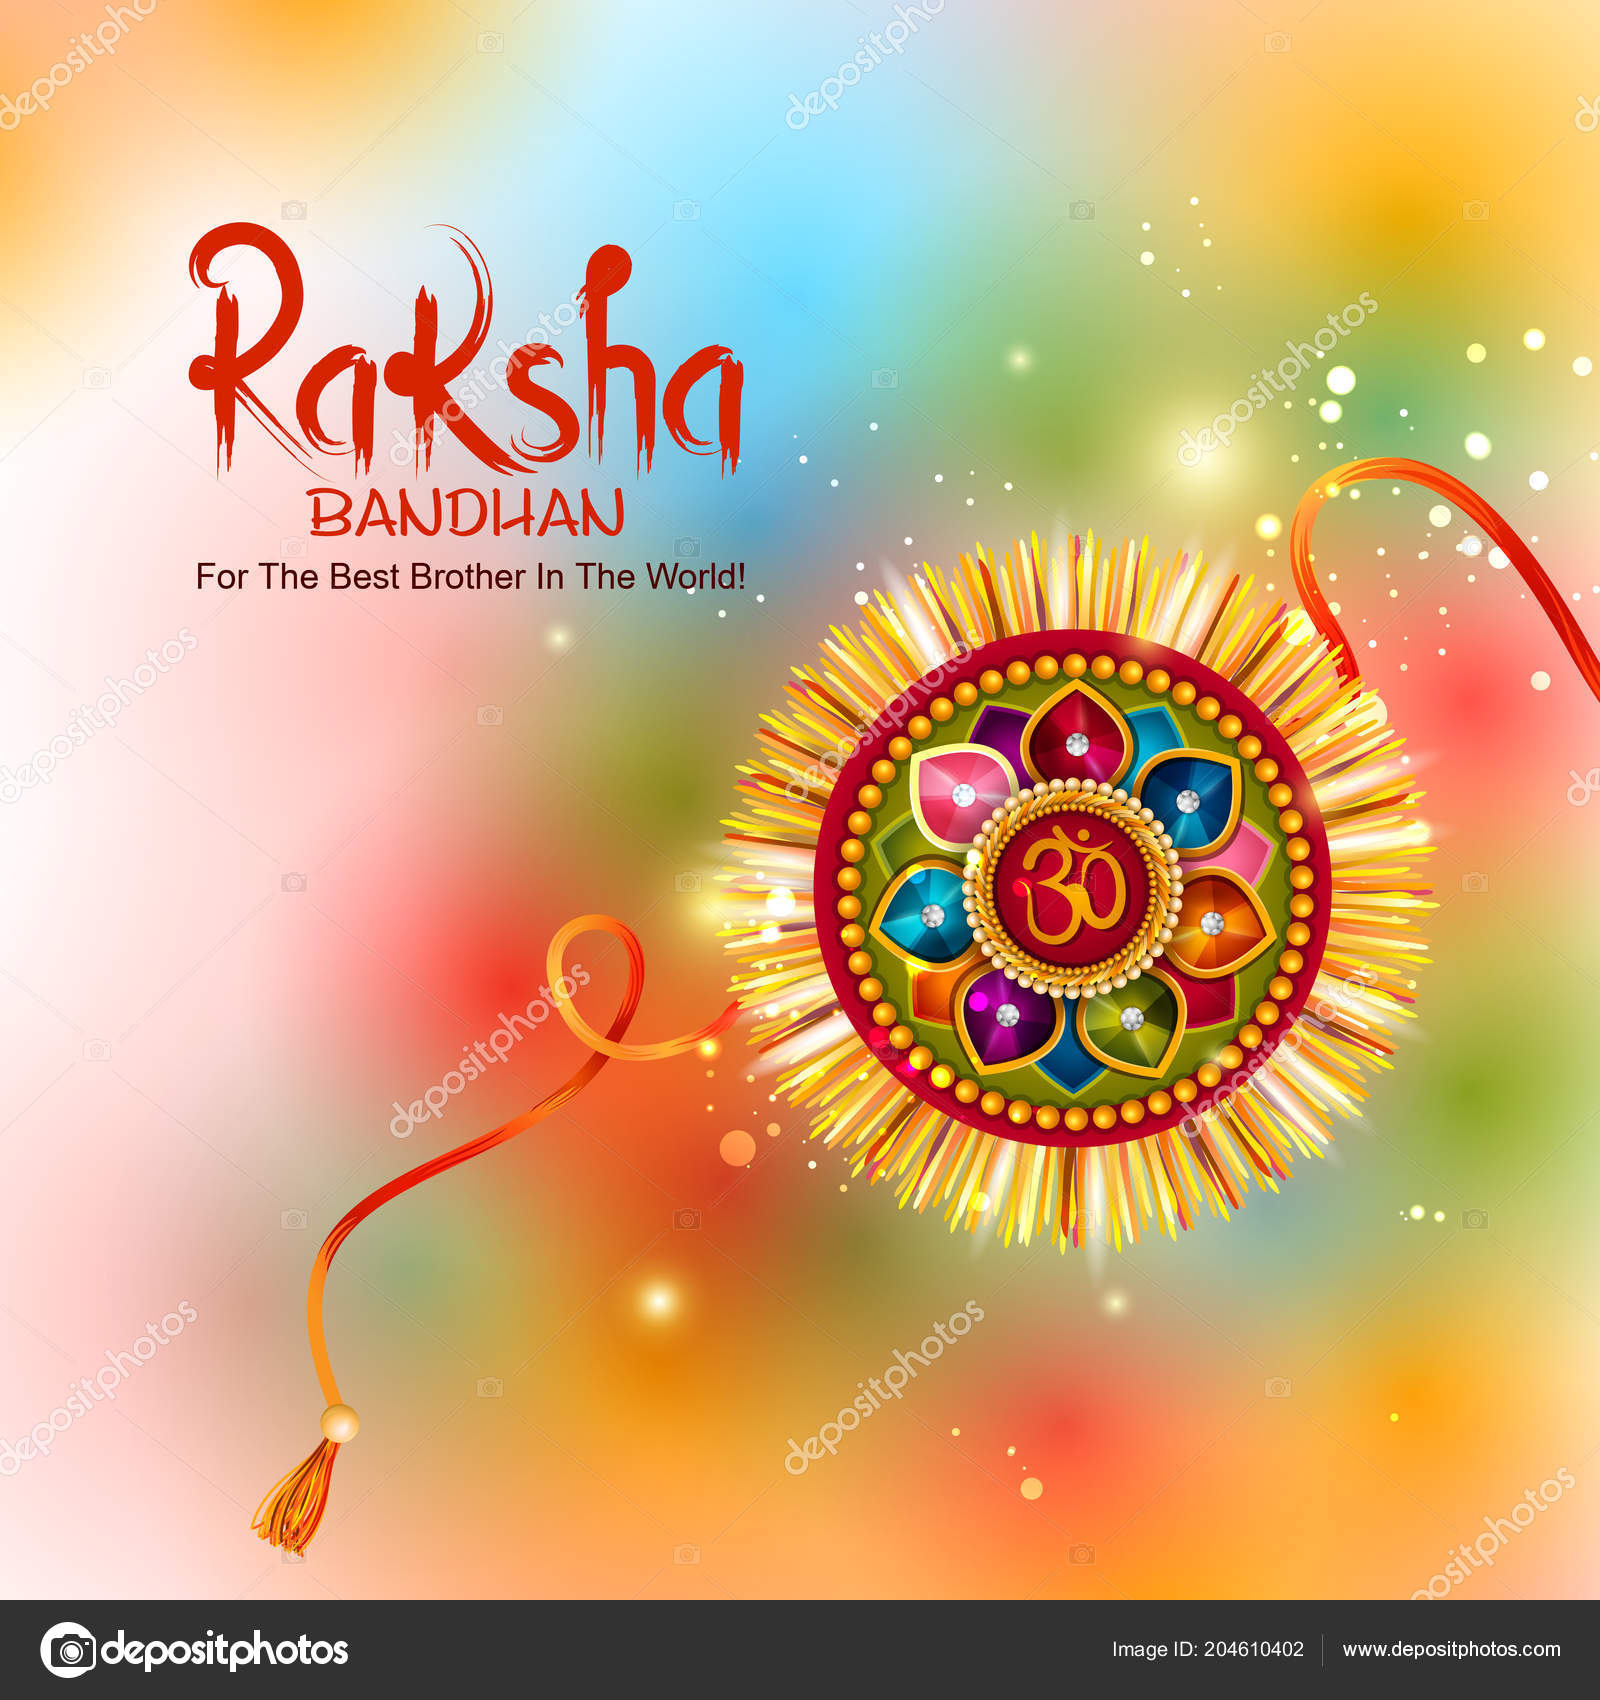 Raksha bandhan Vector Art Stock Images | Depositphotos